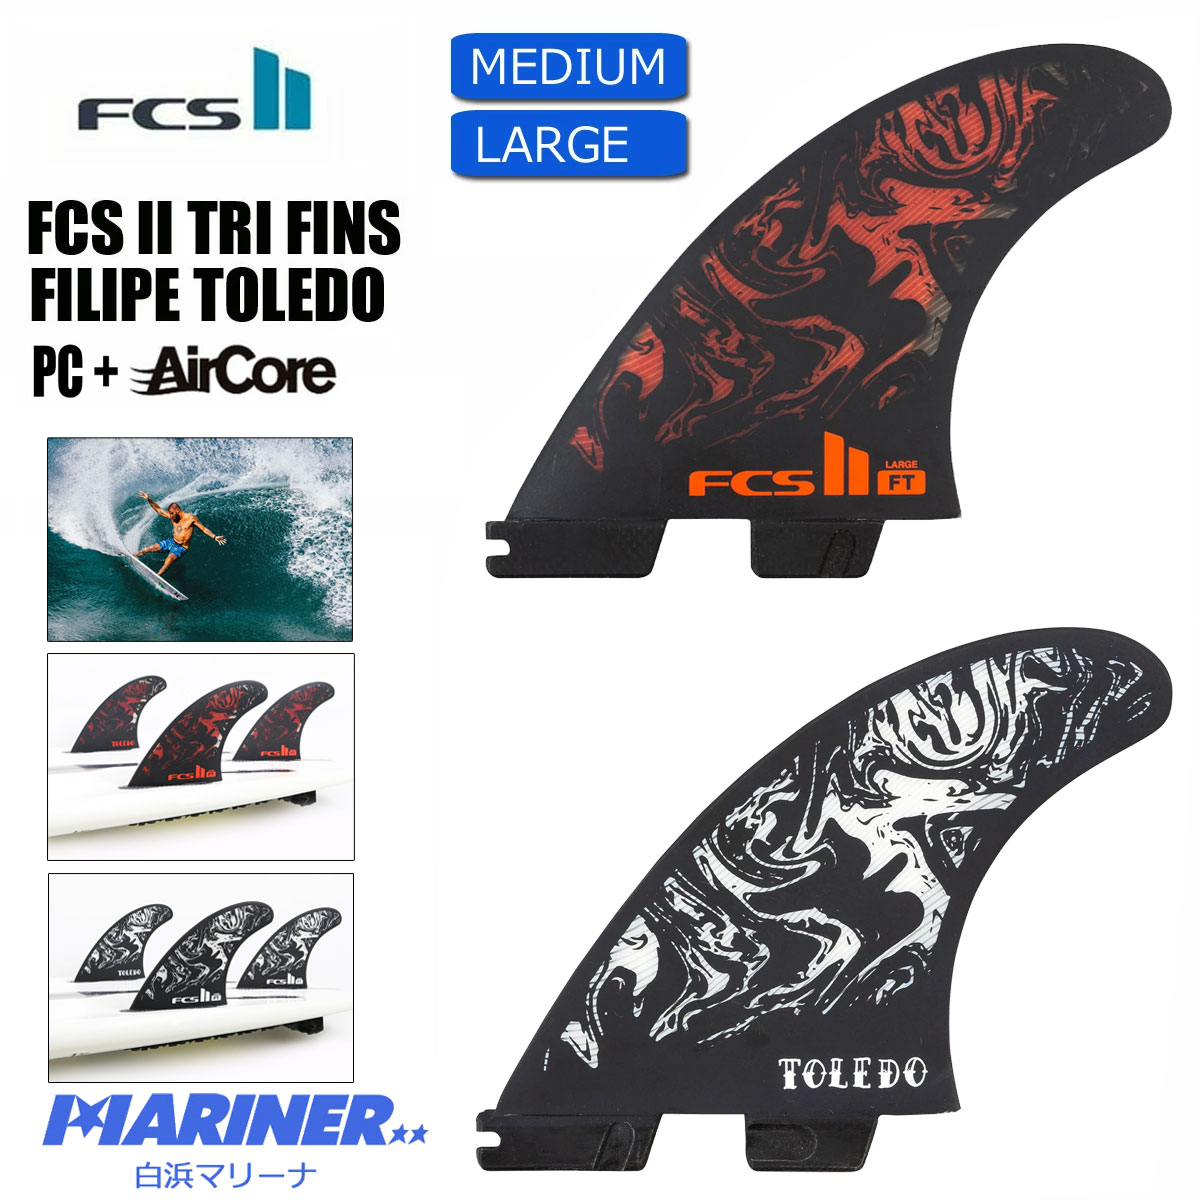 エフシーエスツー フィリペ・トレド パフォーマンスコア+エアコアフィン トライフィン FCS2 FIN FT Filipe Toledo PC +Air  Core TRYFIN